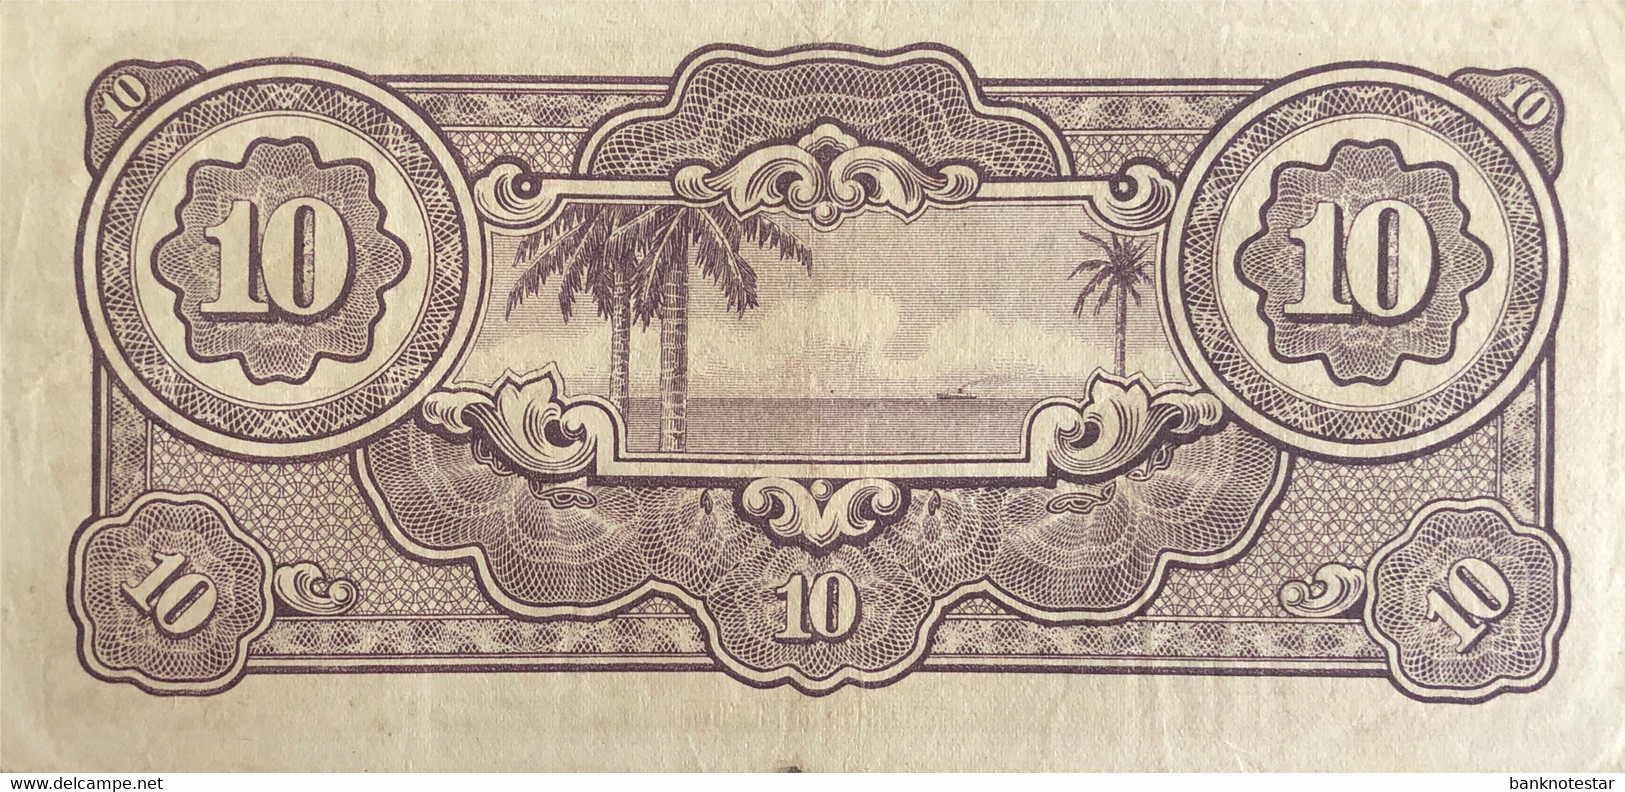 Netherland Indies 10 Gulden, P-125b (1942) - Very Fine - Niederländisch-Indien